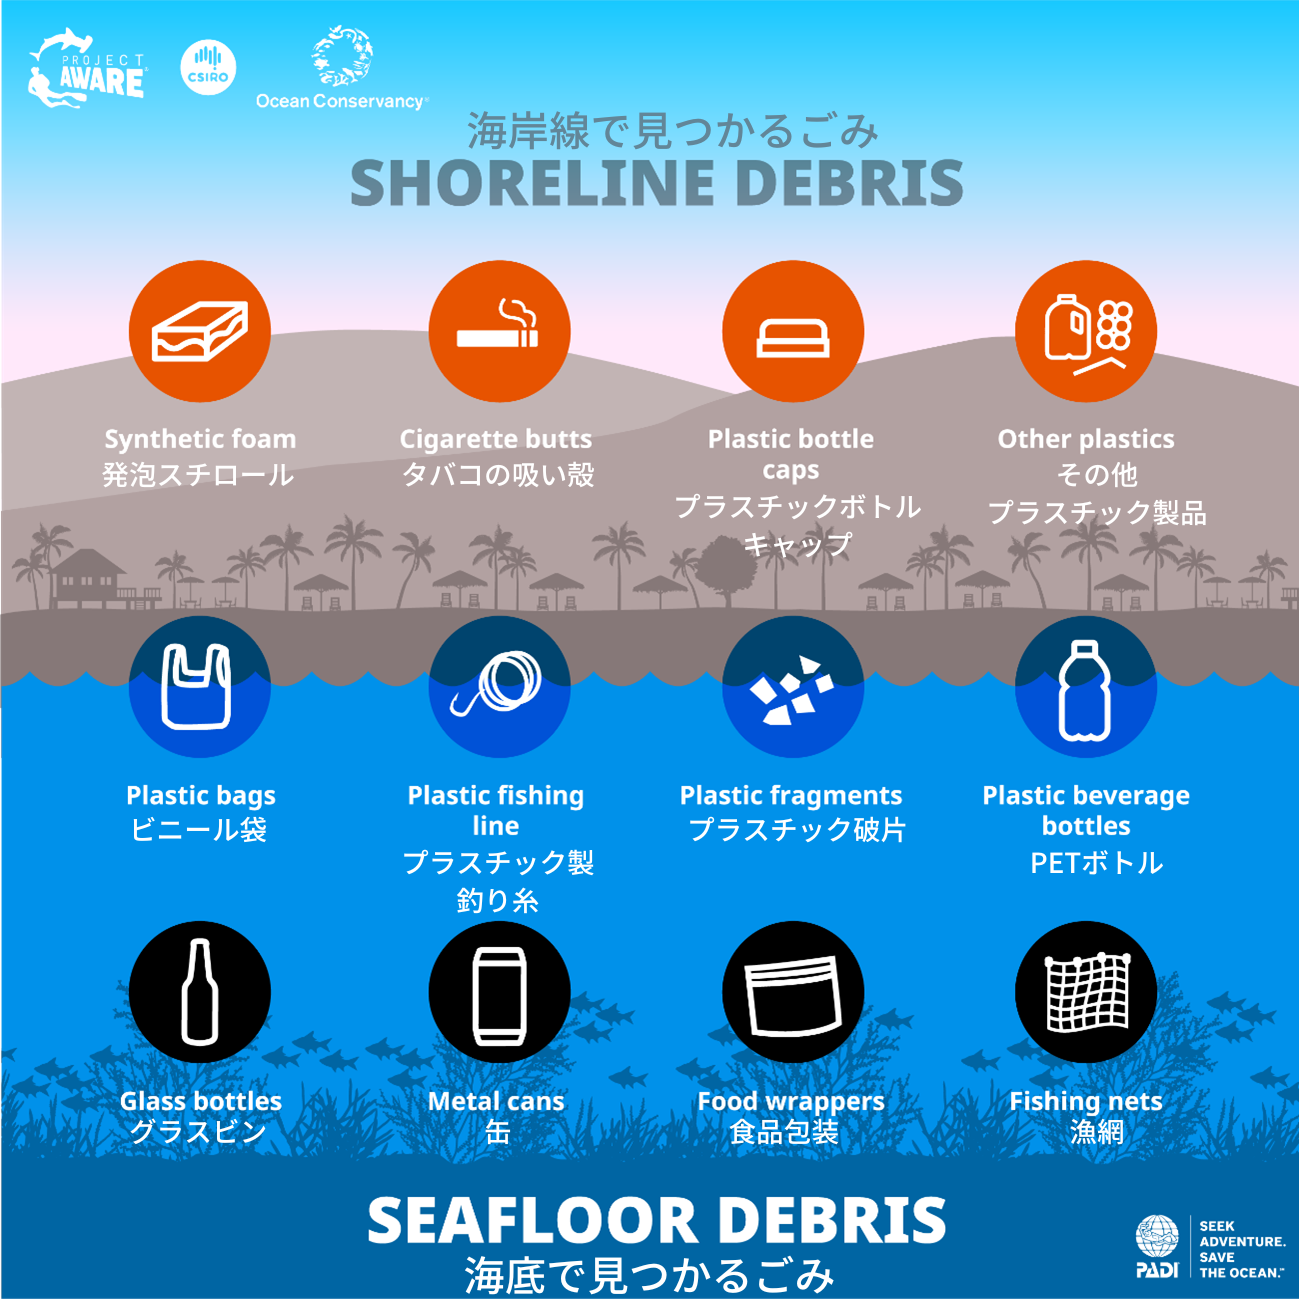 a graphic about shoreline debris and seafloor debris